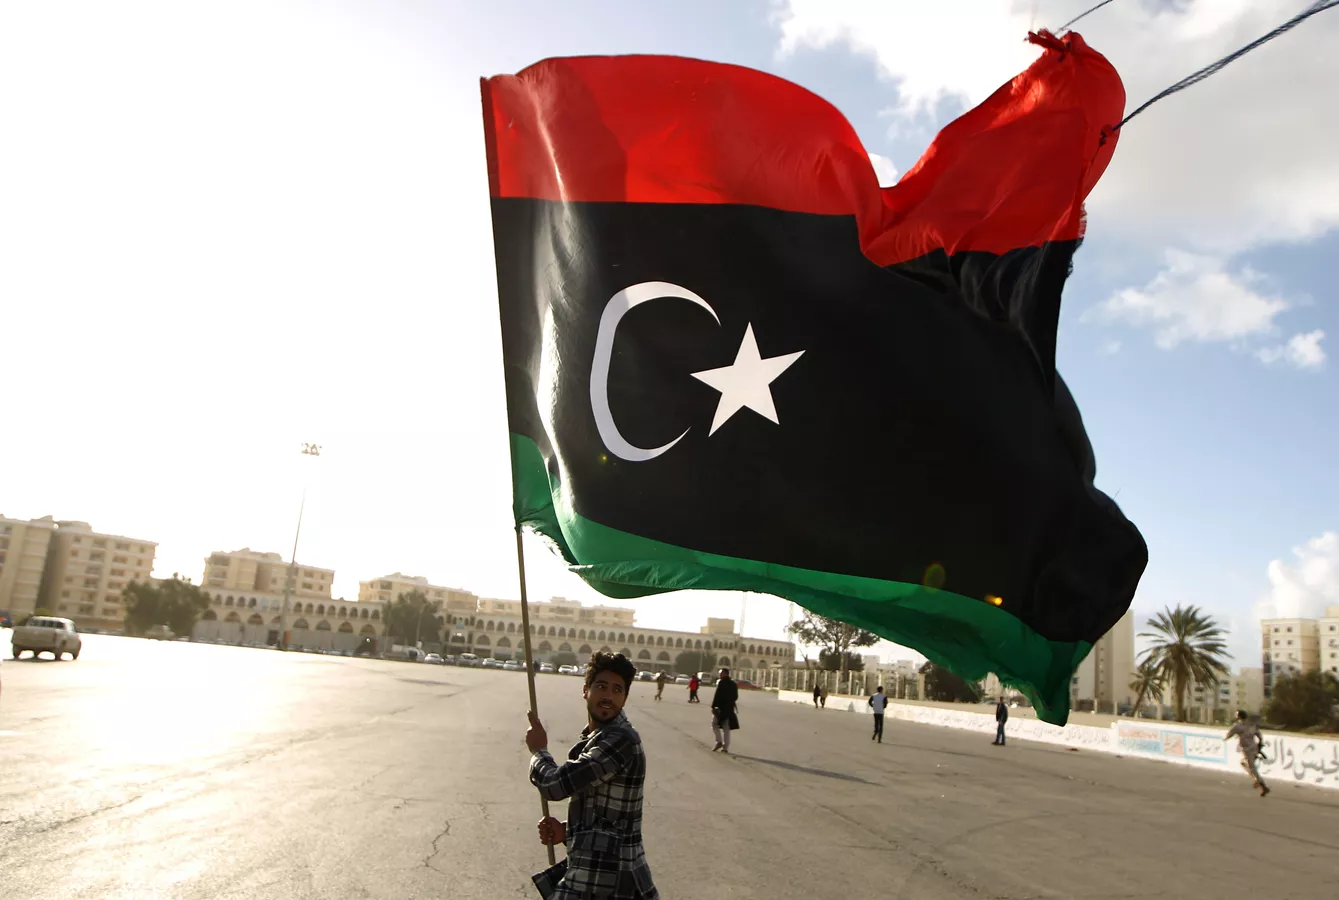 سبوتنيك: أمريكا تجري اتصالات لتشكيل لجنة سياسية جديدة في ليبيا